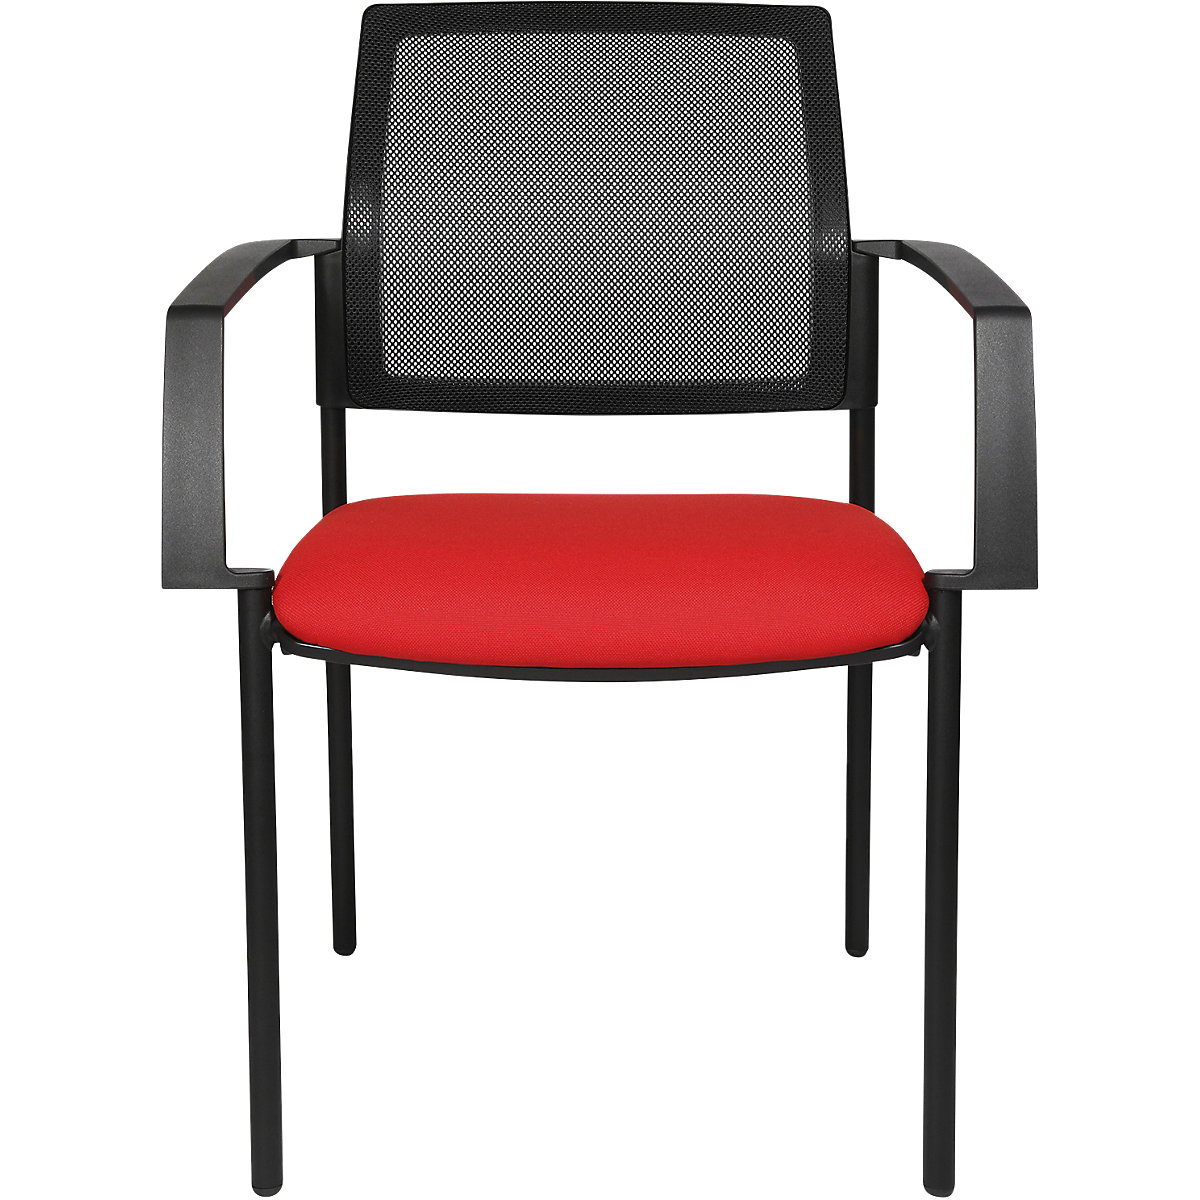 Mesh stapelstoel – Topstar, 4 stoelpoten, VE = 2 stuks, zitting rood, frame zwart-8